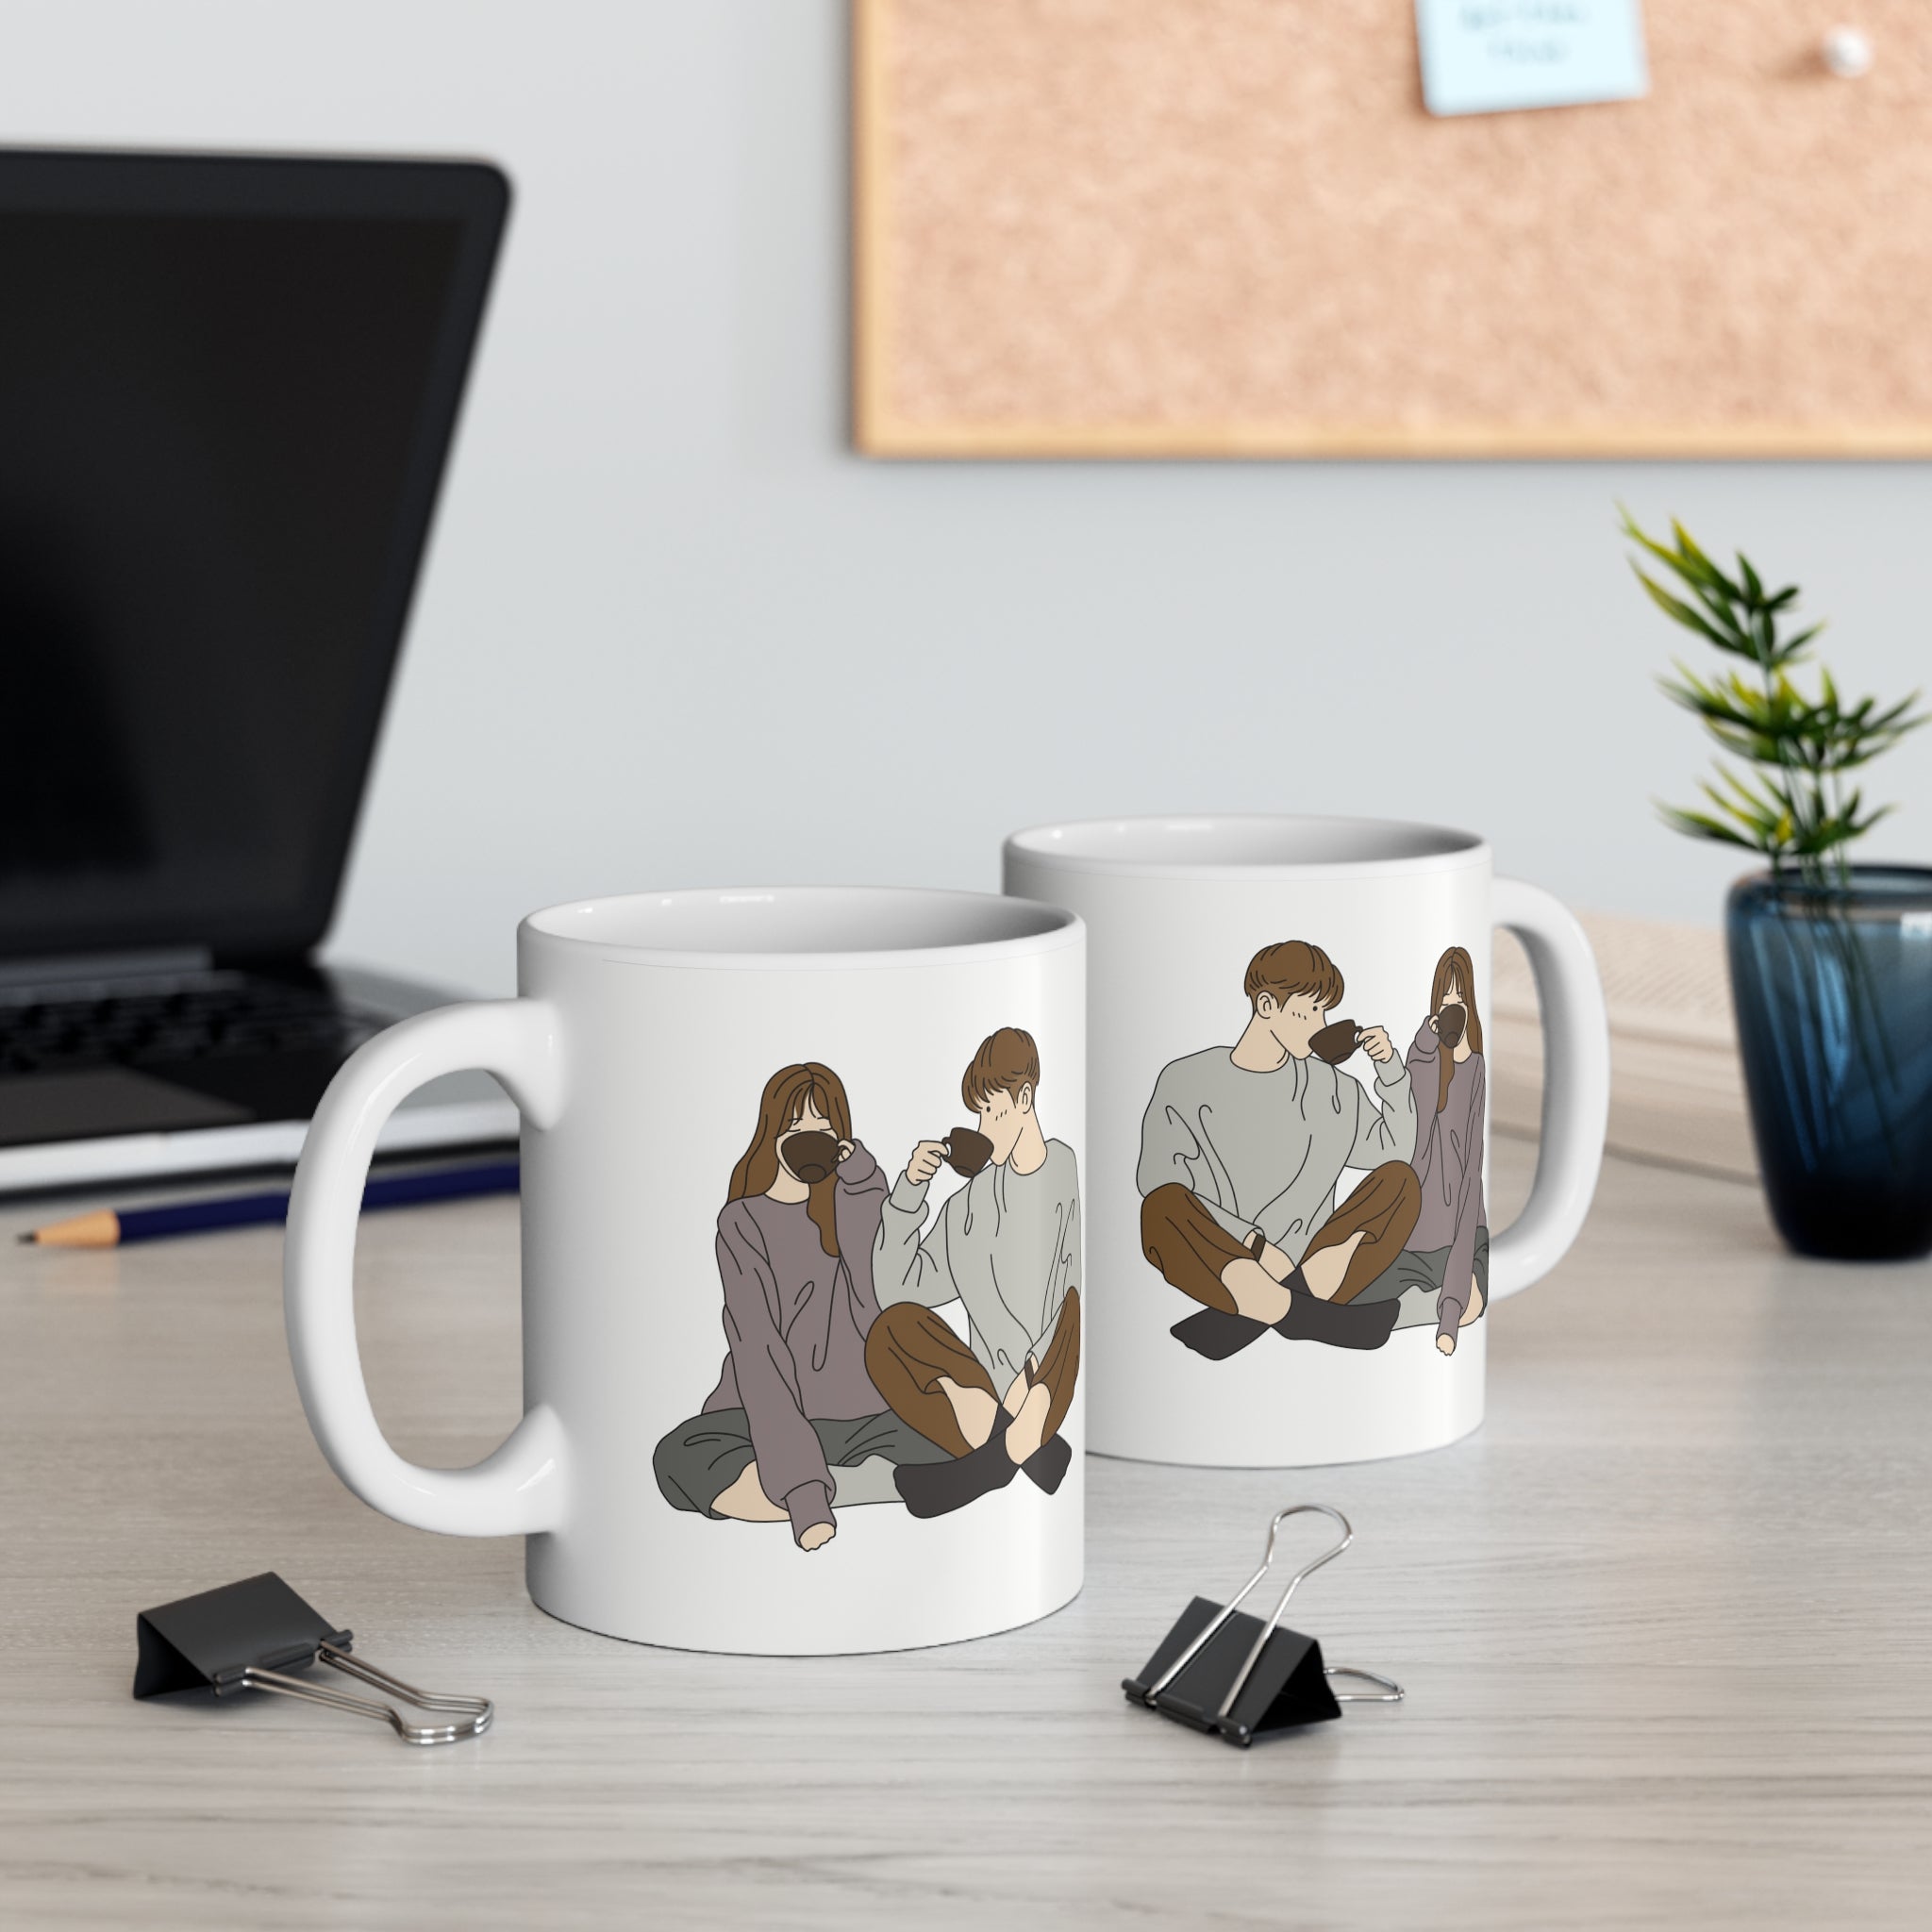 You, Me and Coffee | Printed Couple Coffee Mug | 11 Oz